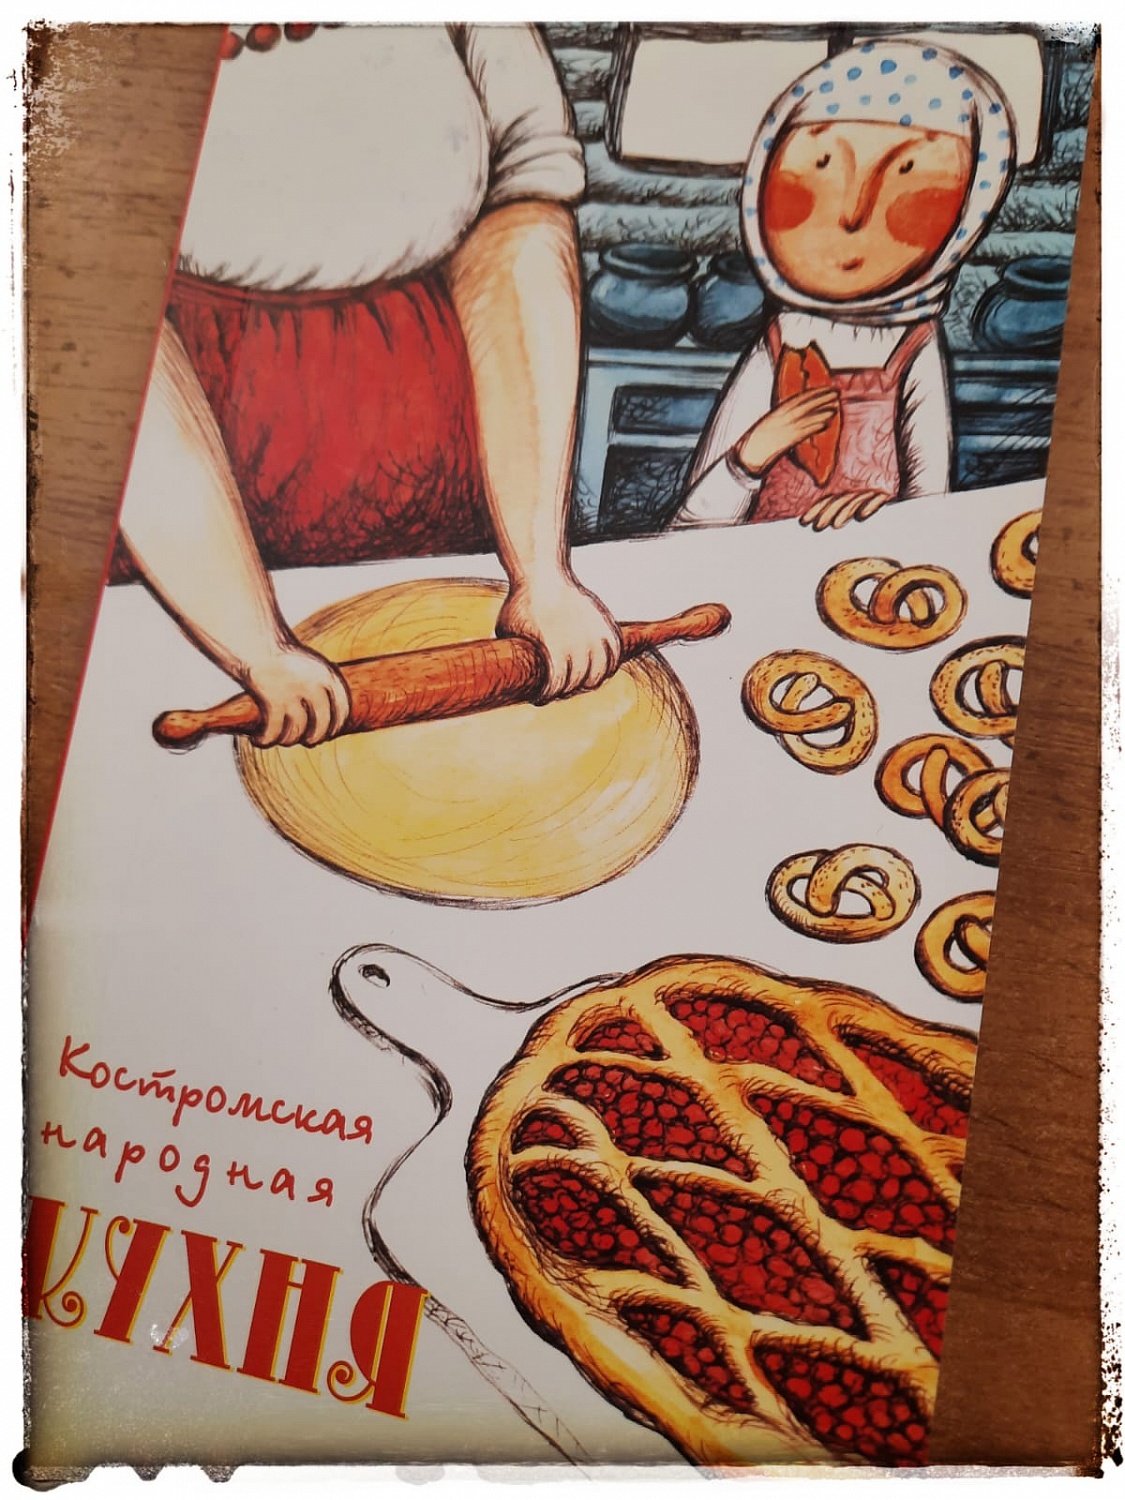 Рецепты костромской народной кухни. Кулич с тмином